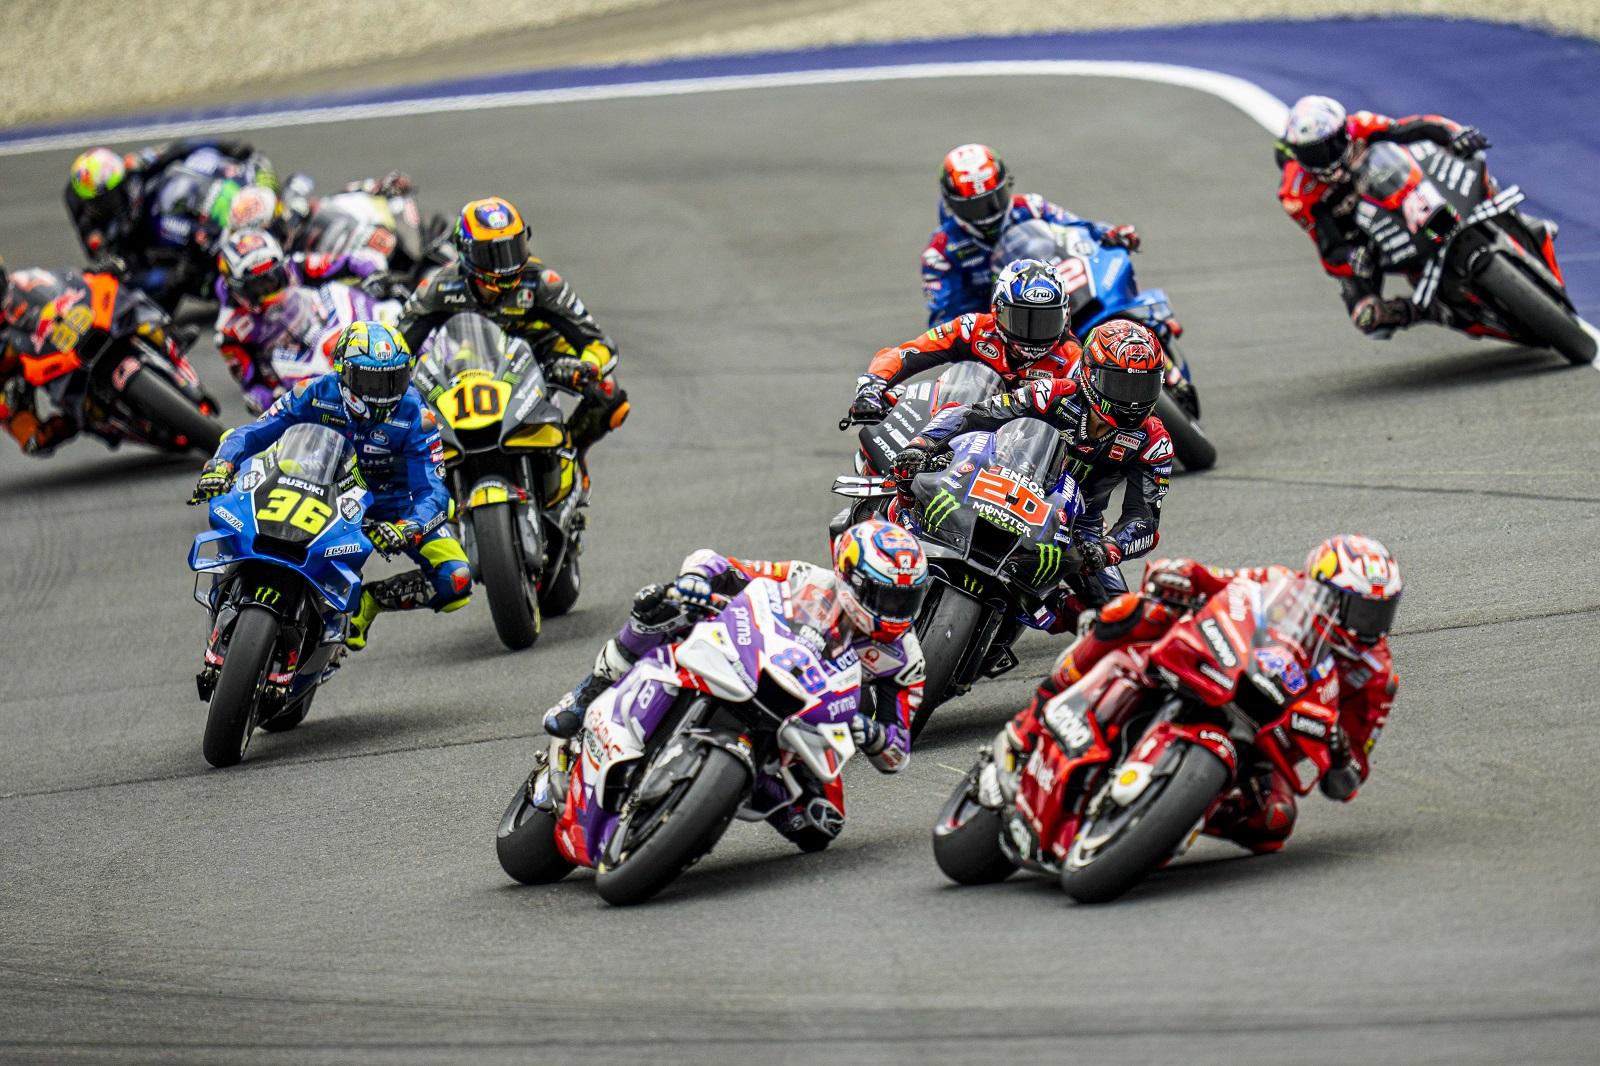 Moto GP: corrida sprint cancelada devido ao mau tempo - CNN Portugal